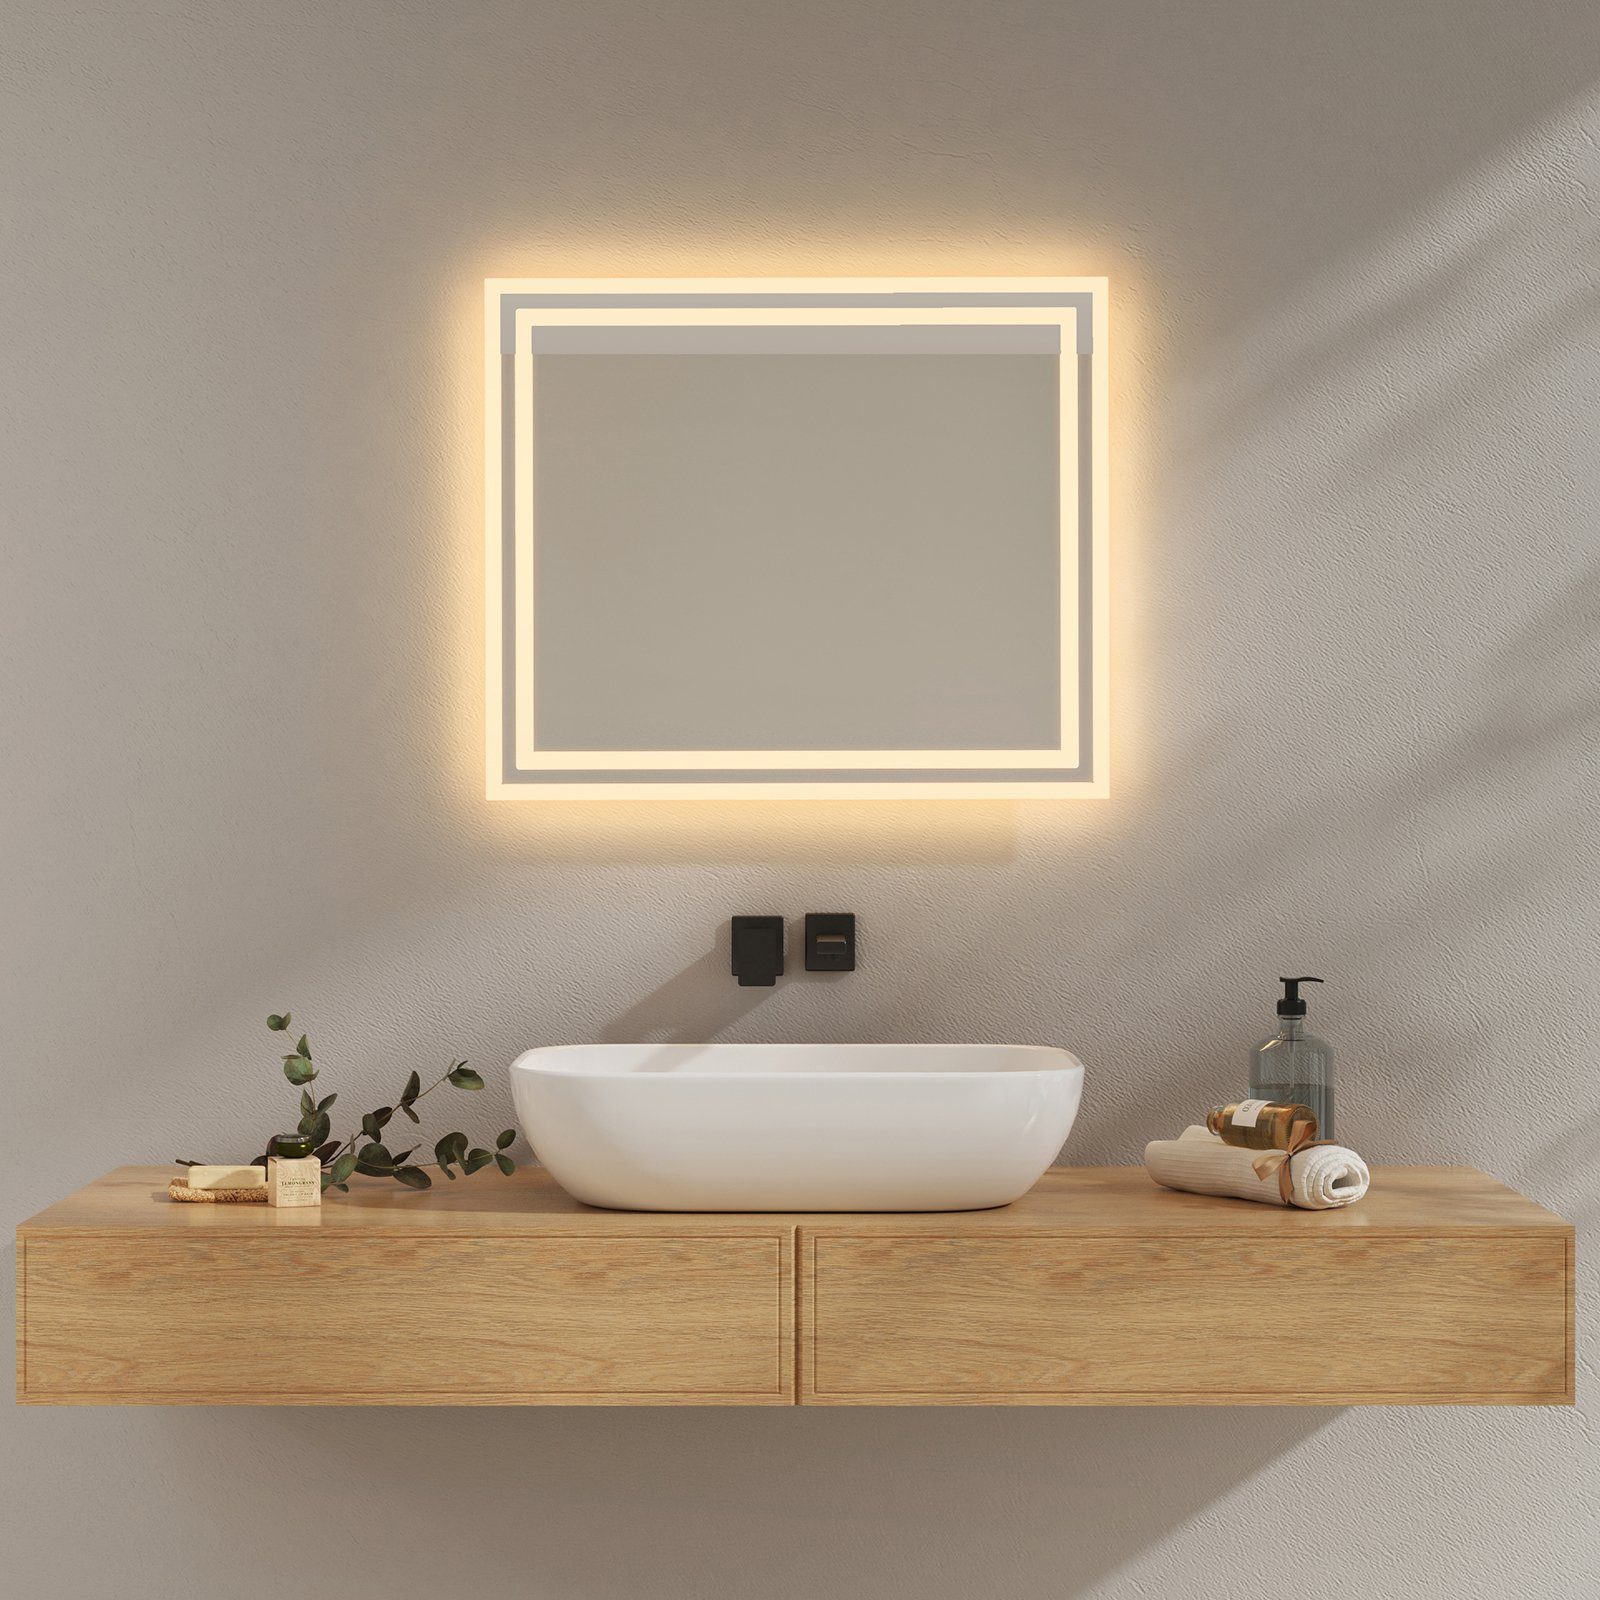 EMKE Badspiegel mit 2 Badezimmerspiegel des Druckknopfschalter Beleuchtung Wandspiegel, LED Beschlagfrei, Farben Lichts, Badspiegel